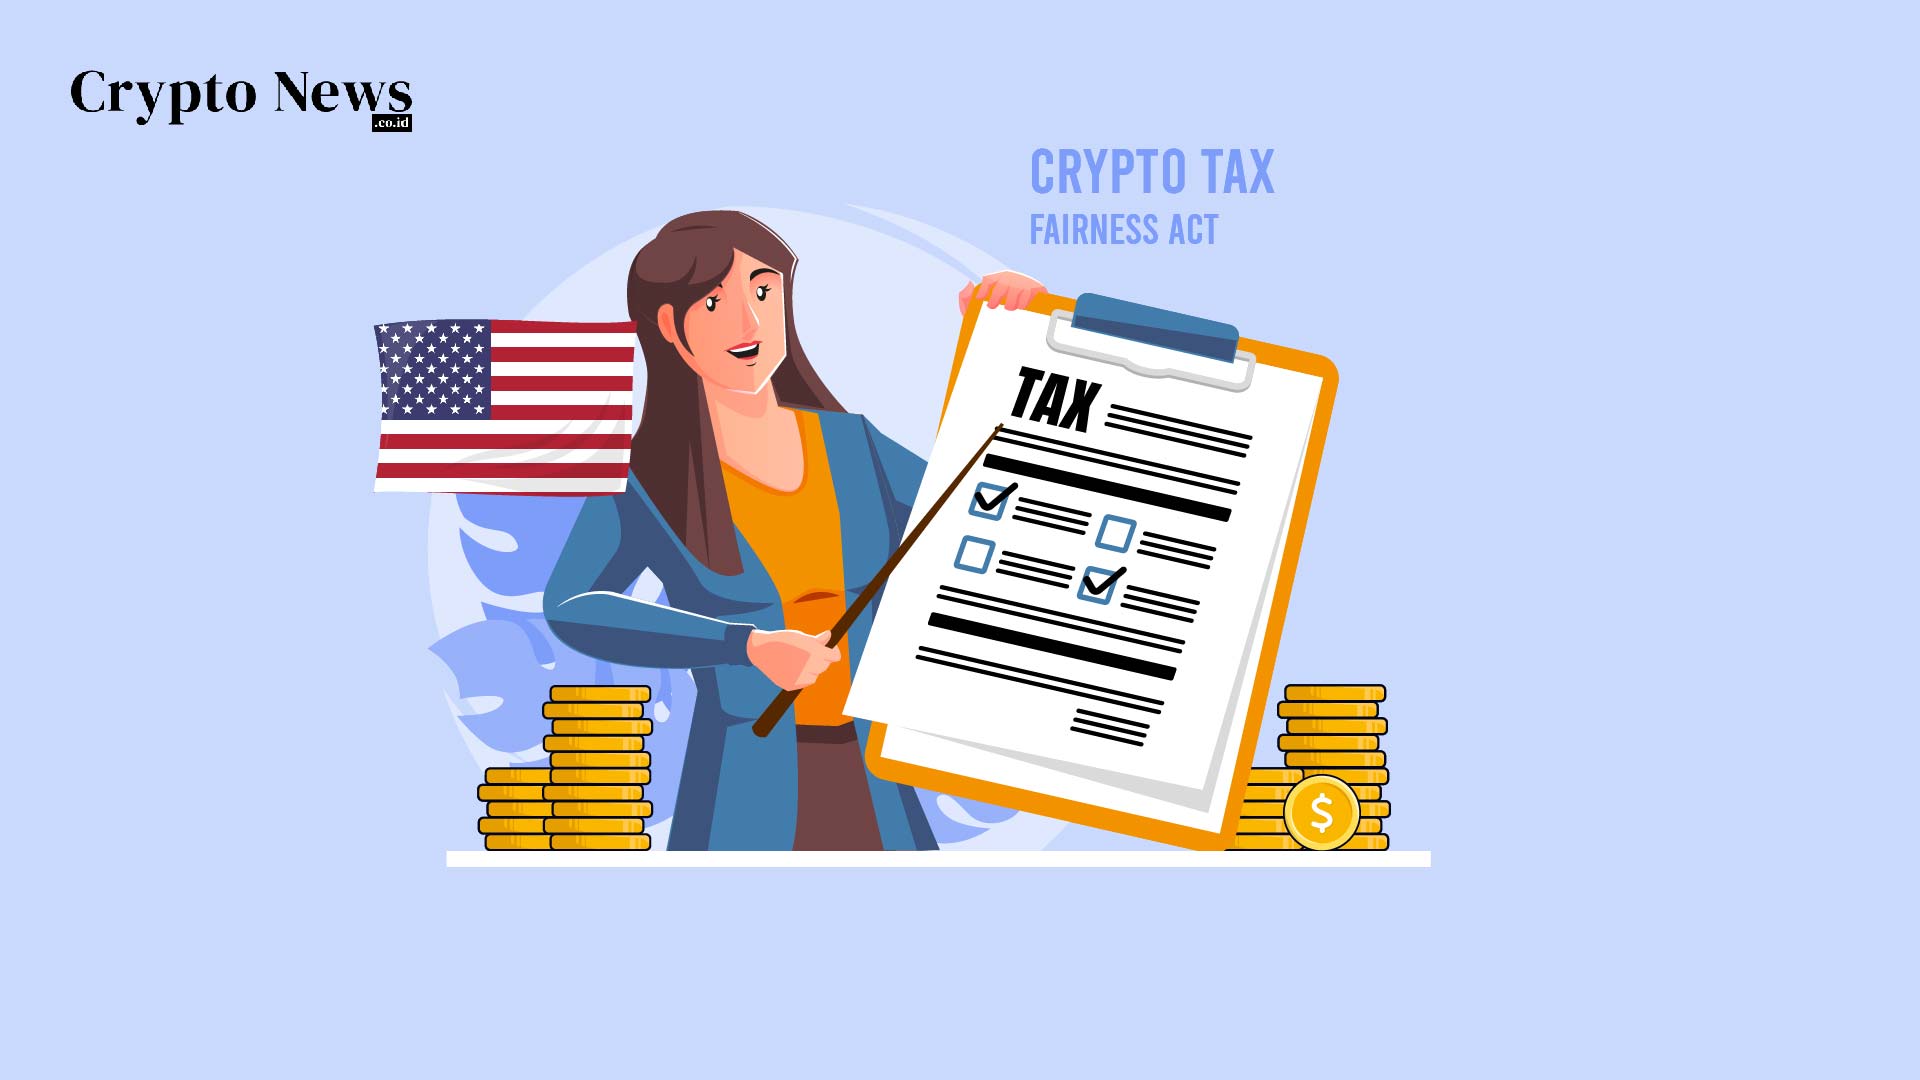 Illust : AS Memperkenalkan Crypto Tax Fairness Act untuk Mempromosikan Penggunaan Cryptocurrency sebagai Metode Pembayaran